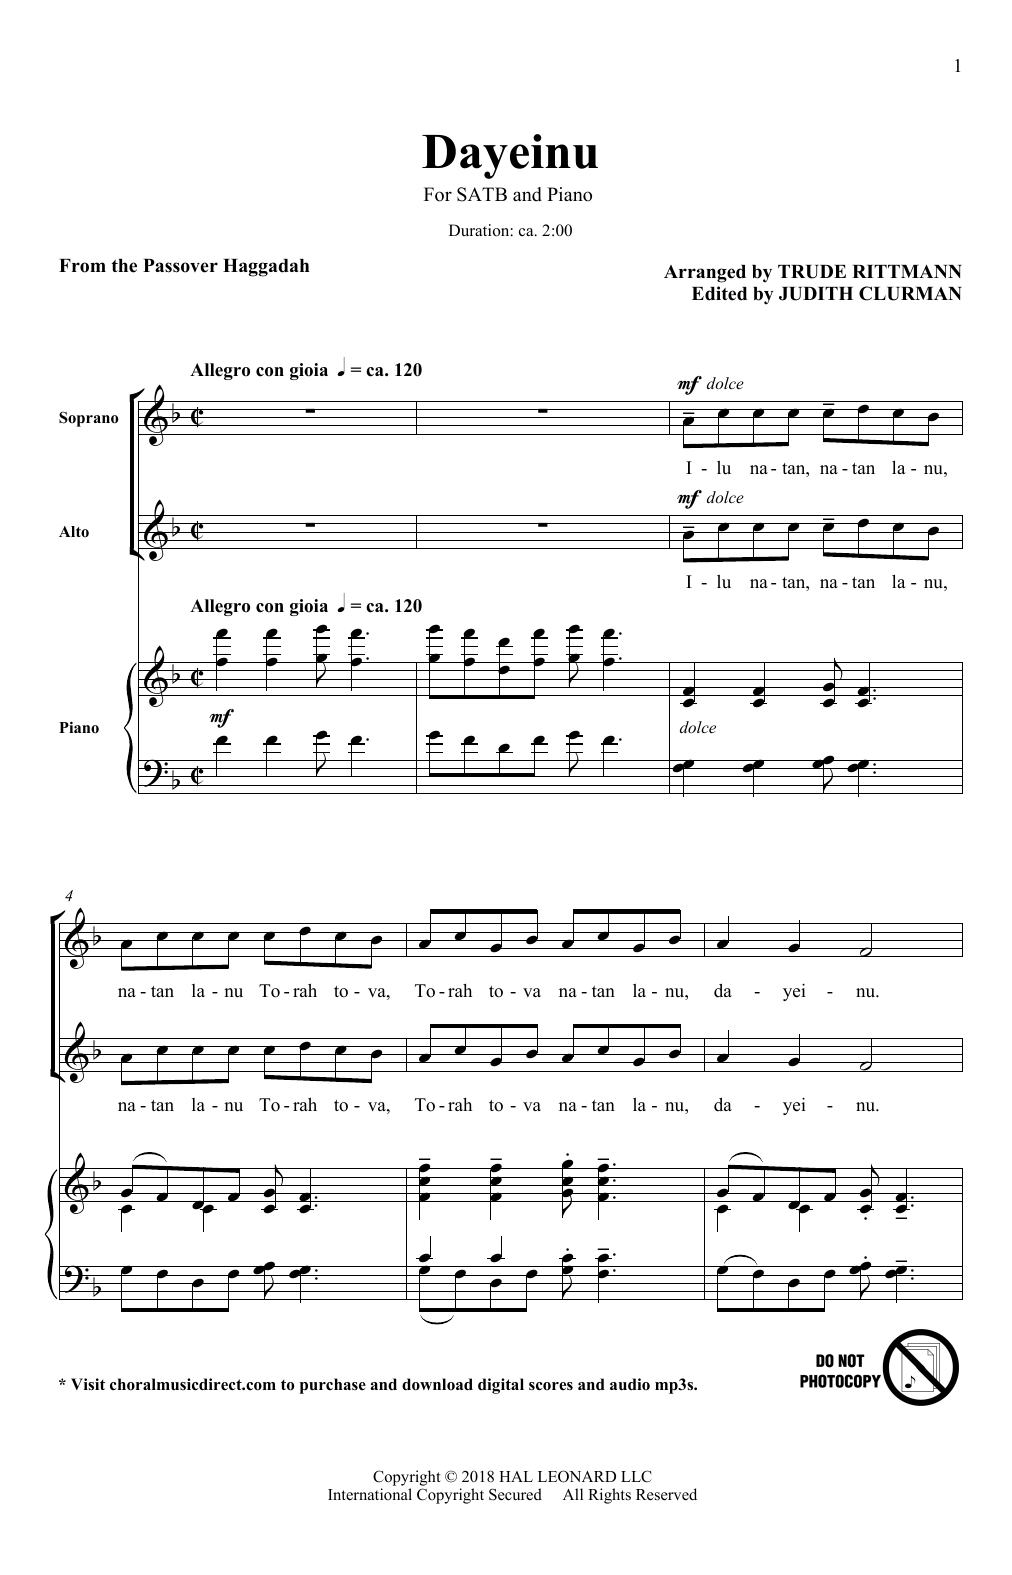 Trude Rittmann Dayeinu Sheet Music Notes & Chords for SATB Choir - Download or Print PDF